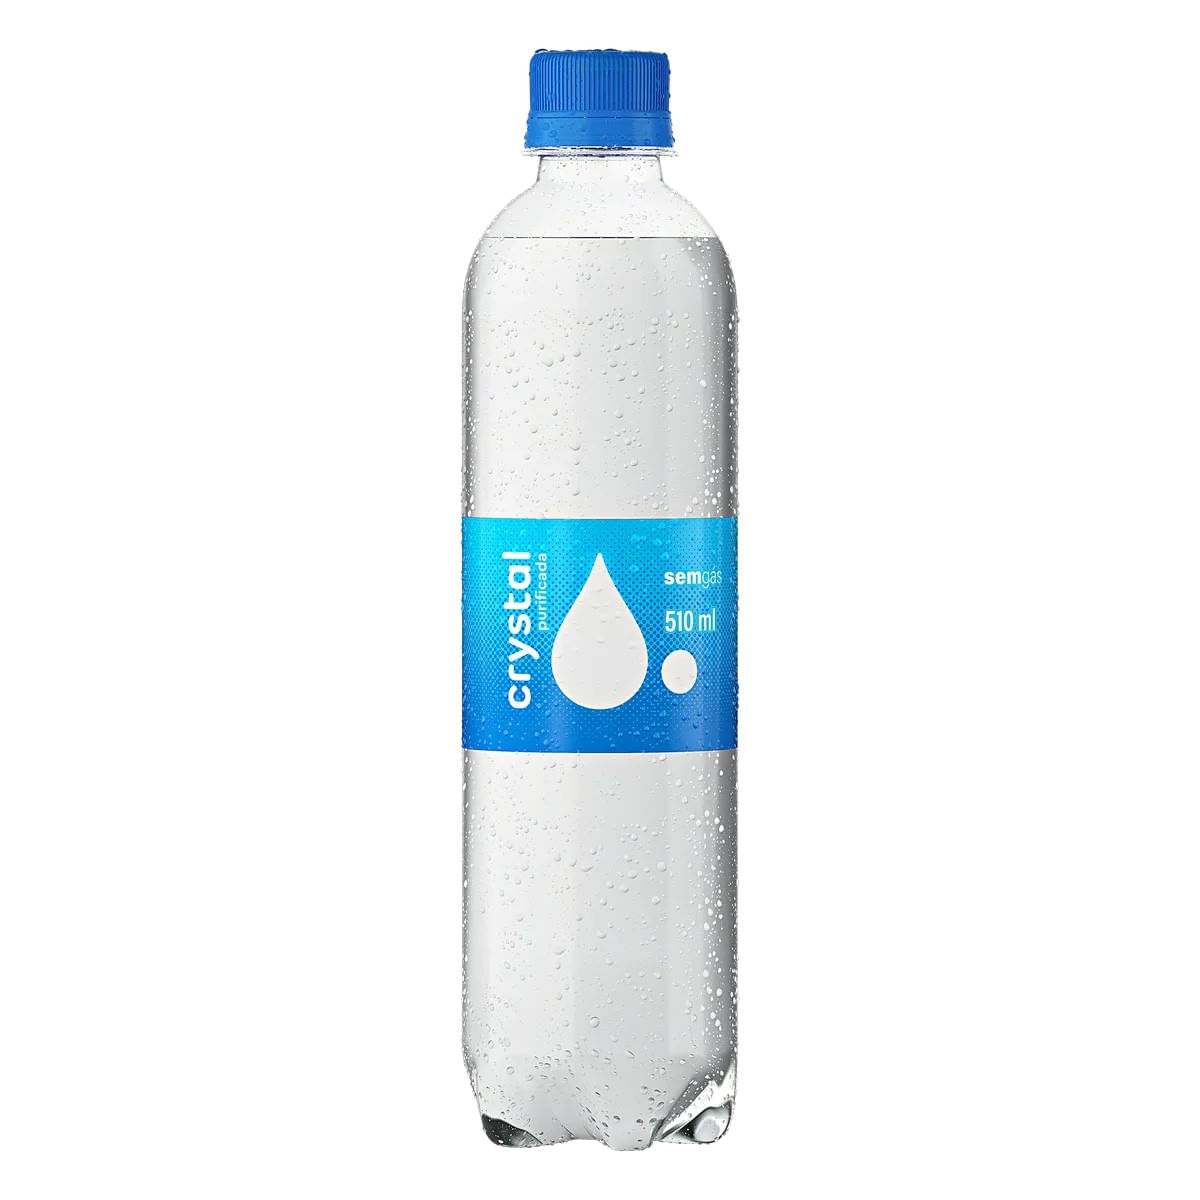 agua-mineral-purificada-sem-gas-crystal-510-ml-1.jpg